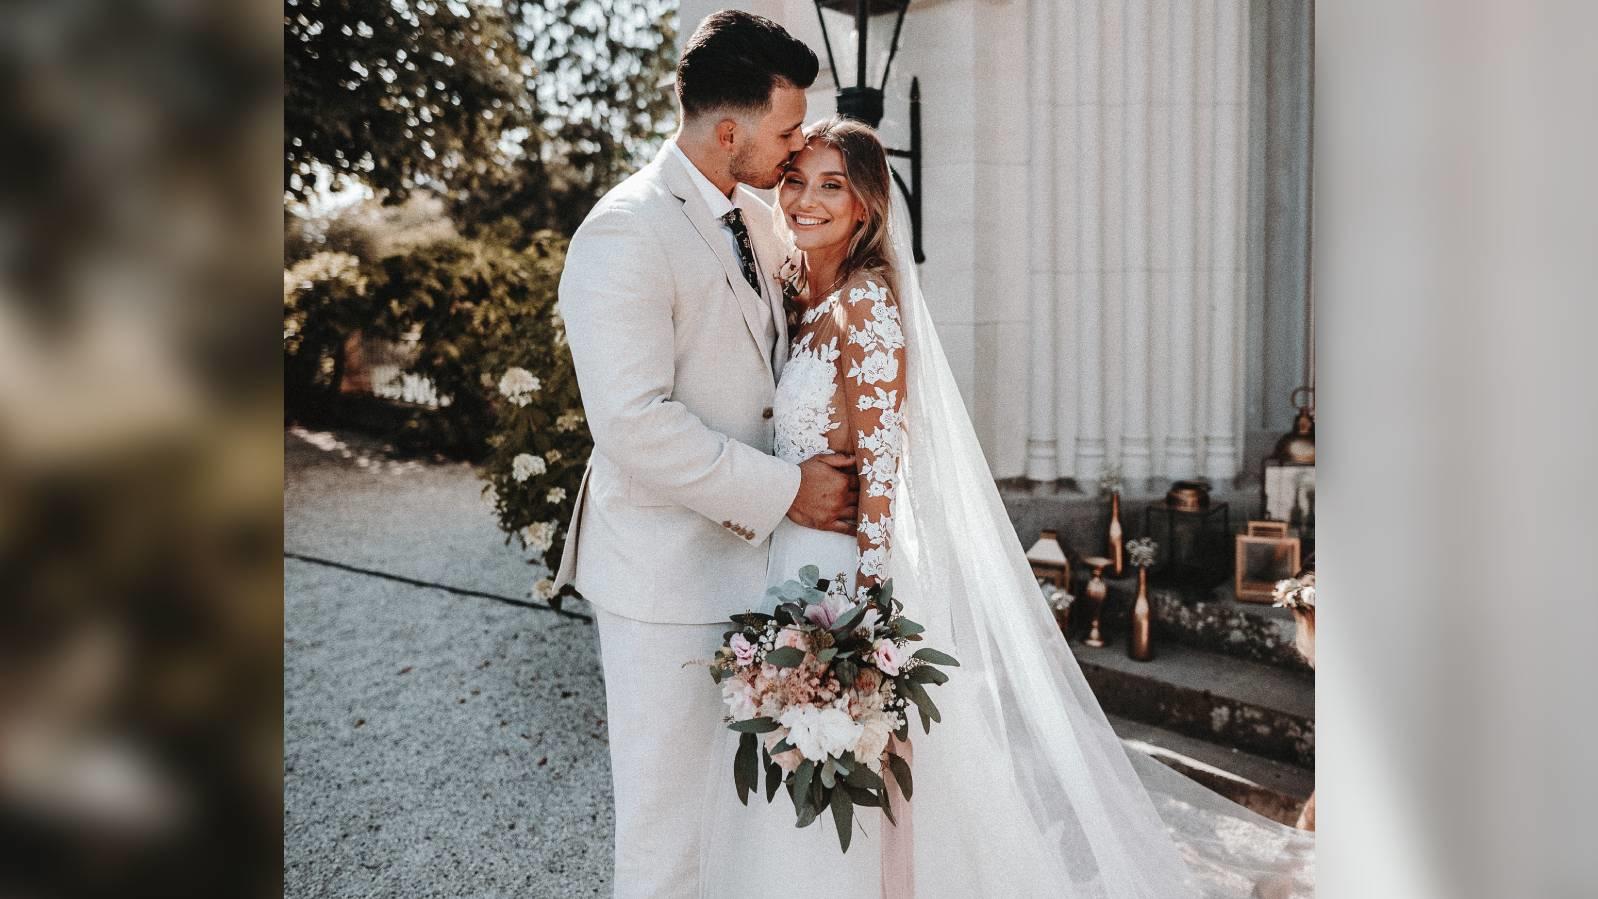 Ana und Tim Johnson während ihrer Hochzeit im Jahr 2018.